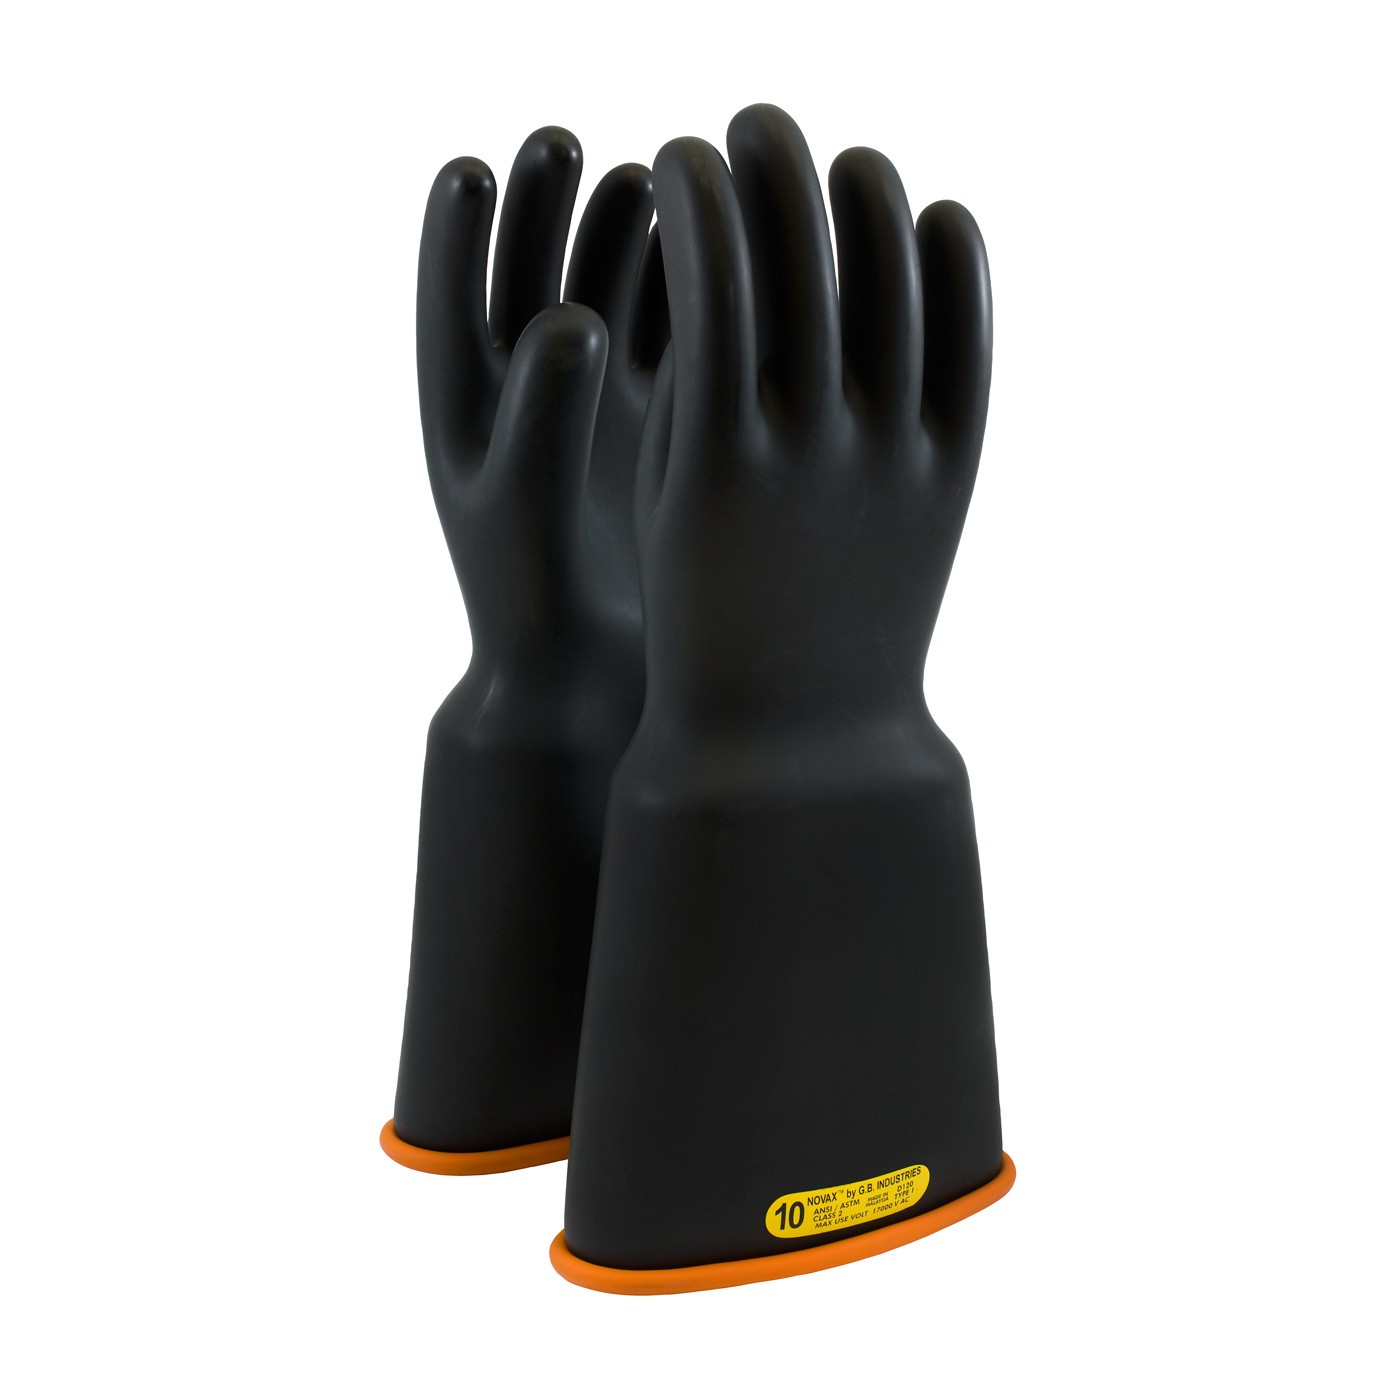 NOVAX Insulating Glove, Class 2, 16 In., Blk./Orn., Bell Cuff